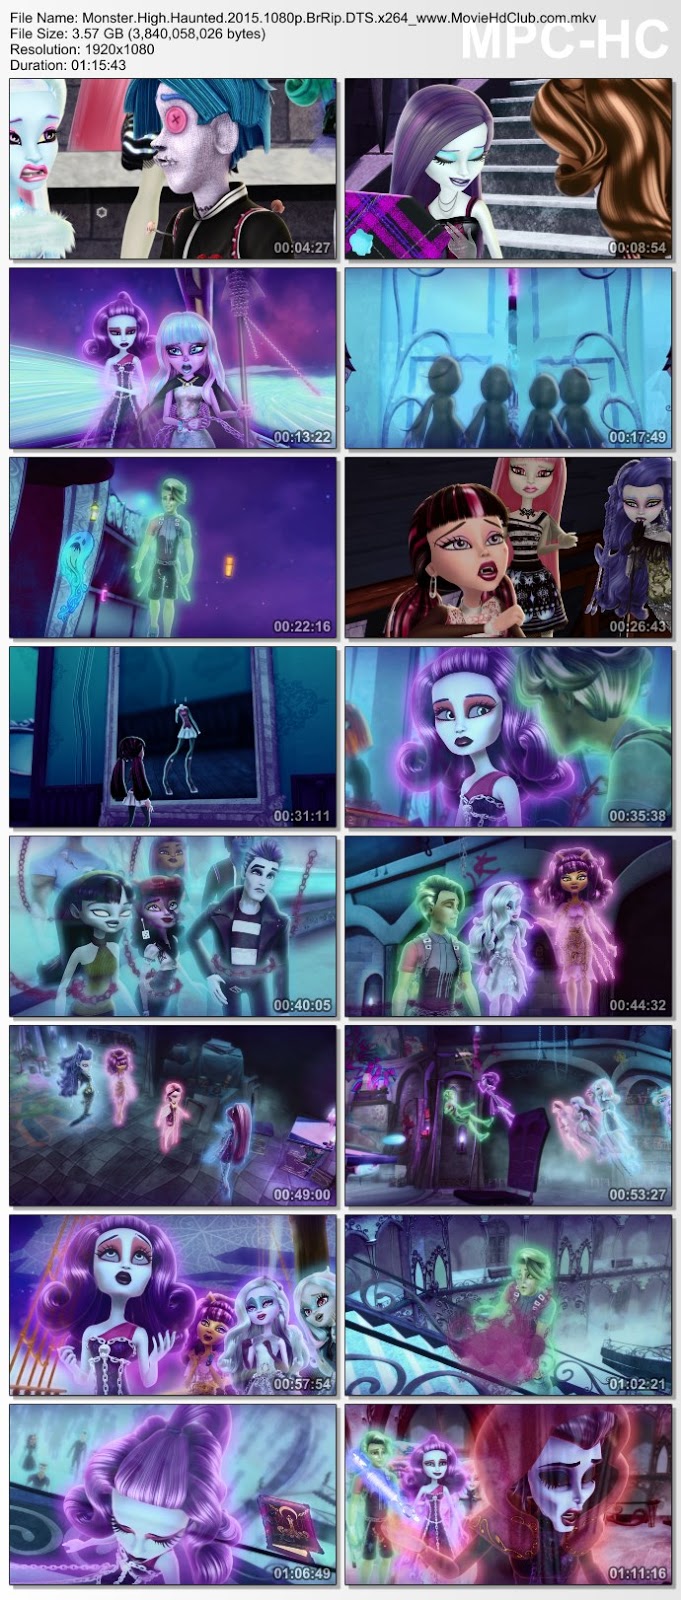 [Mini-HD] Monster High: Haunted (2015) - มอนสเตอร์ ไฮ: หลอน [1080p][เสียง:ไทย 5.1/Eng DTS][ซับ:Eng][.MKV][3.58GB] MH_MovieHdClub_SS